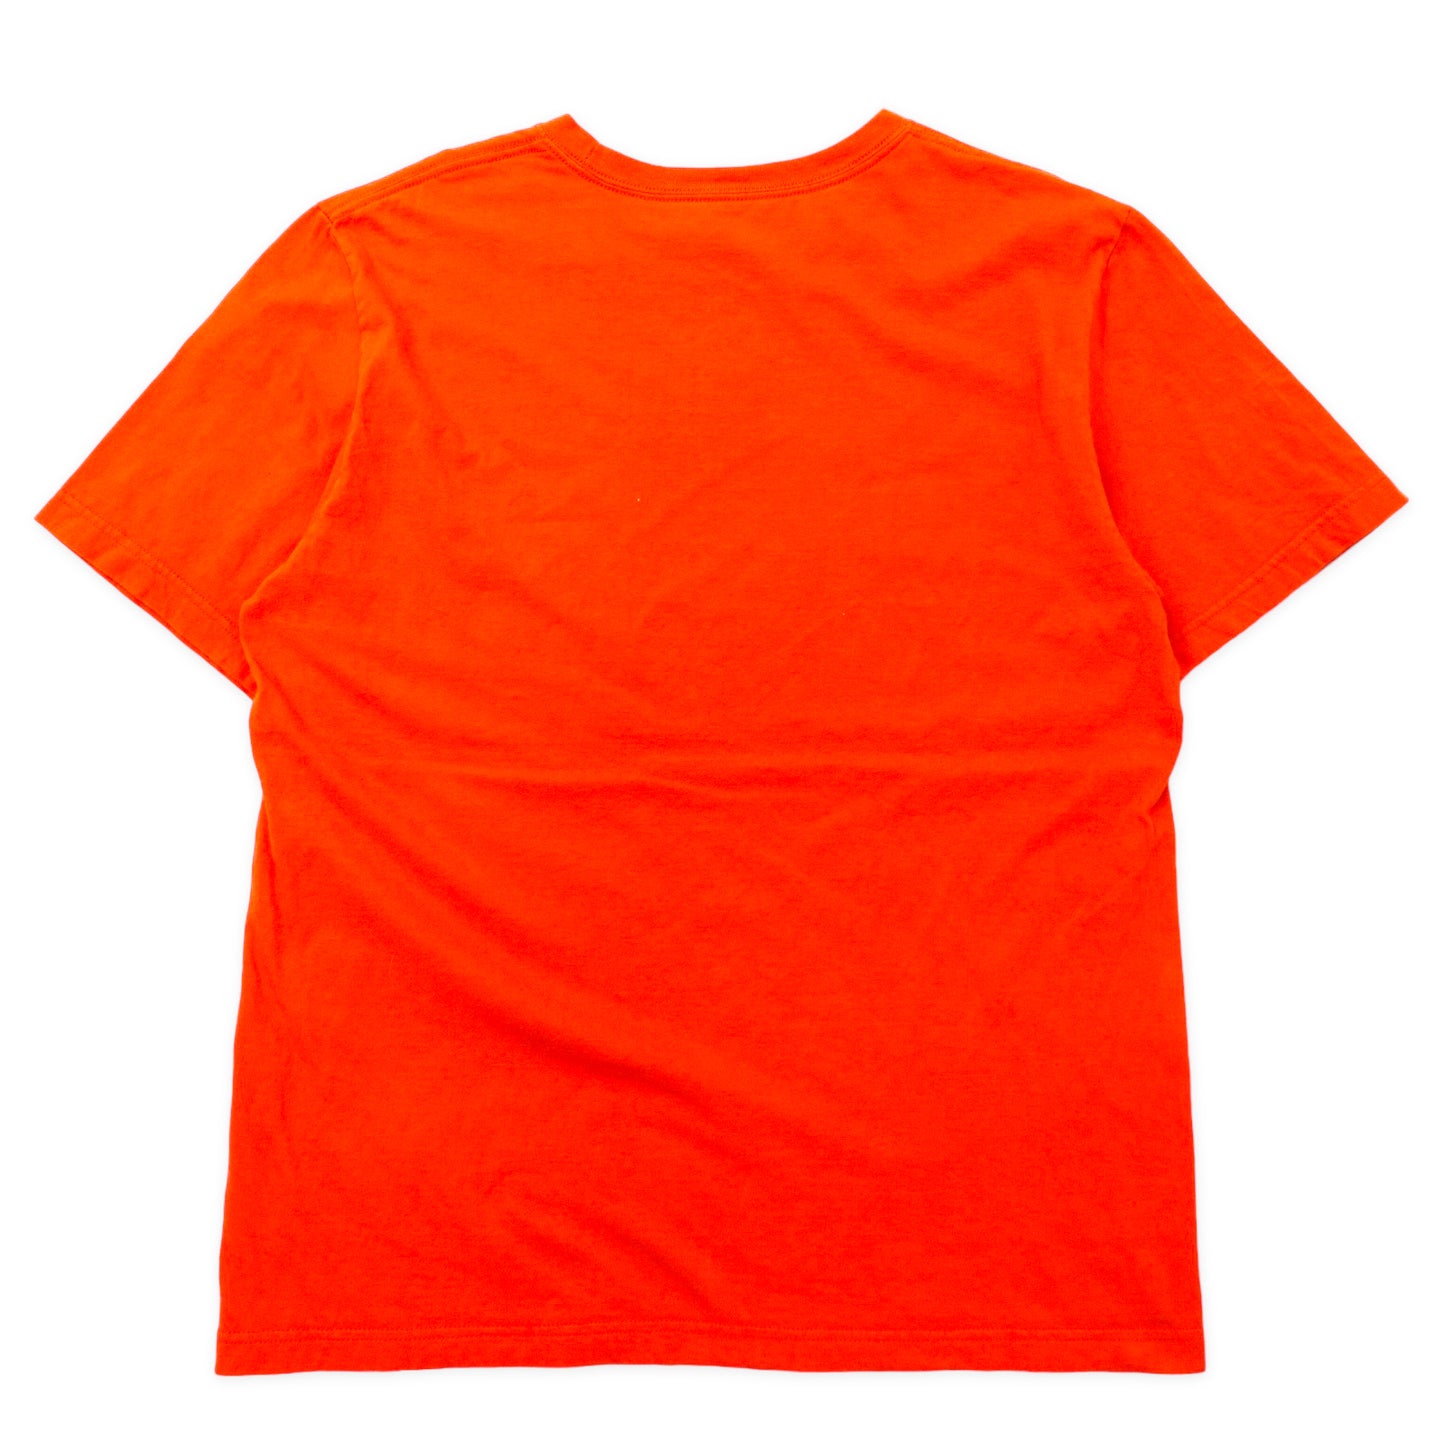 NIKE スウォッシュロゴ プリントTシャツ L オレンジ コットン REGULAR FIT